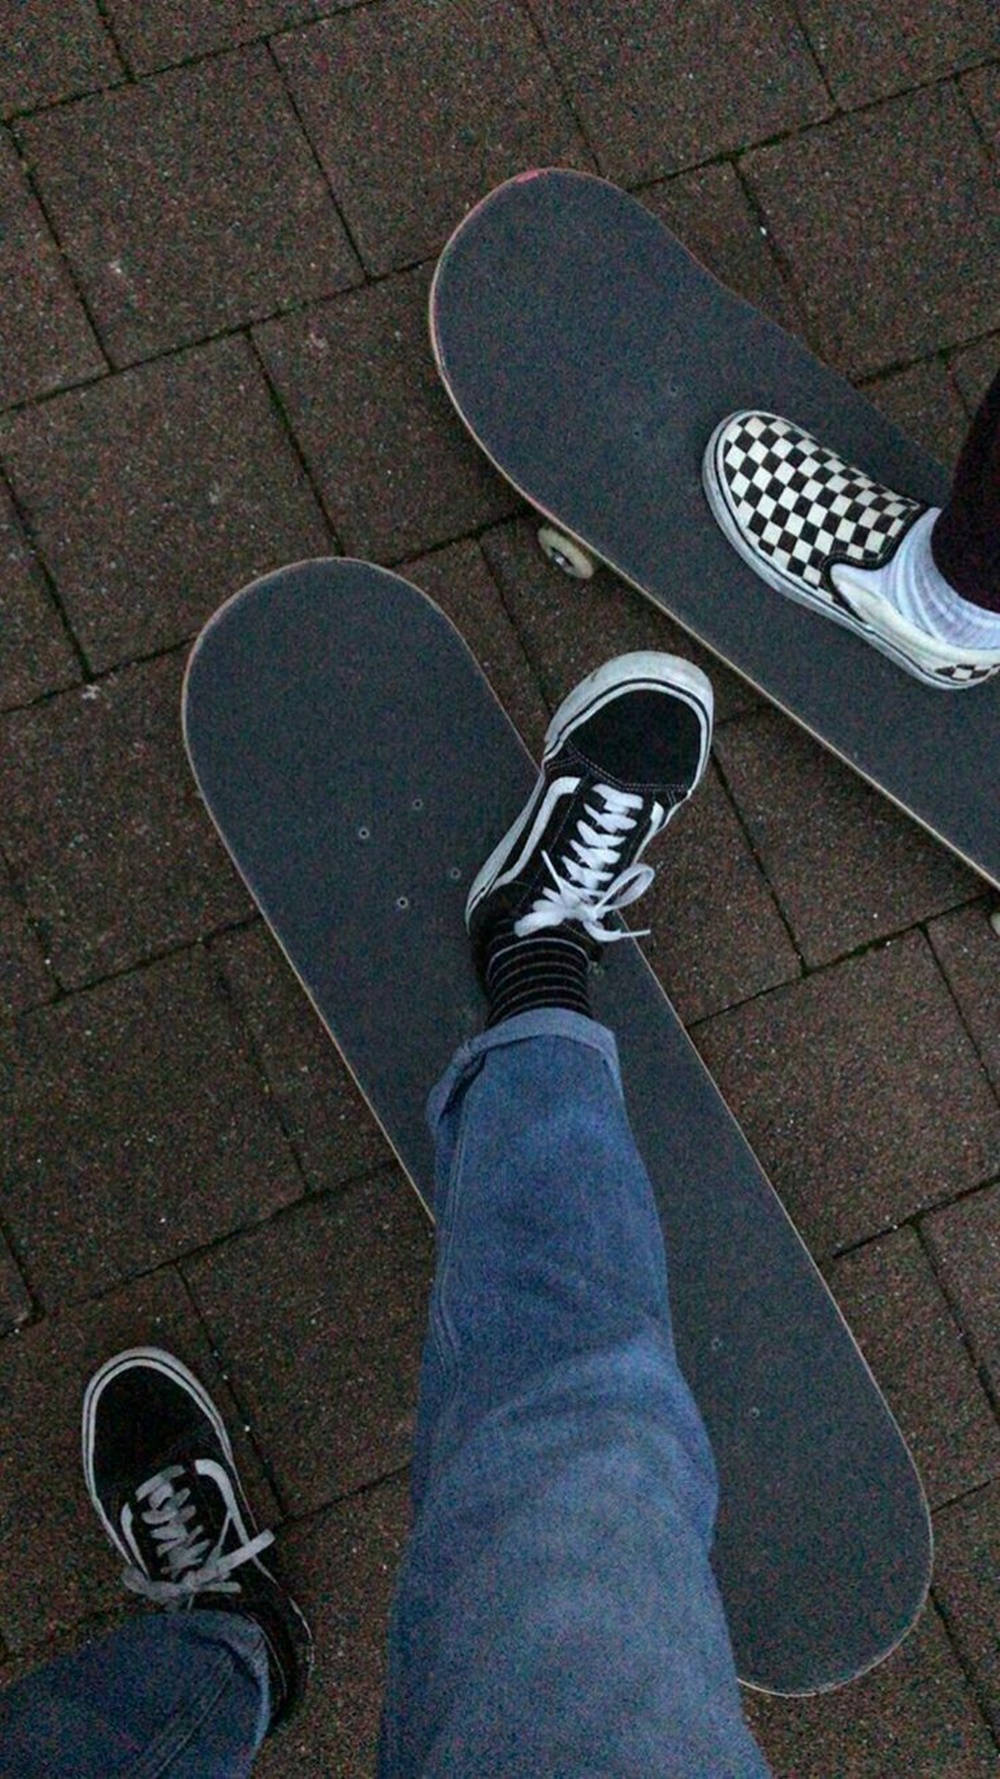 Vans Black And White Skateboard Shoes Skater Aesthetic